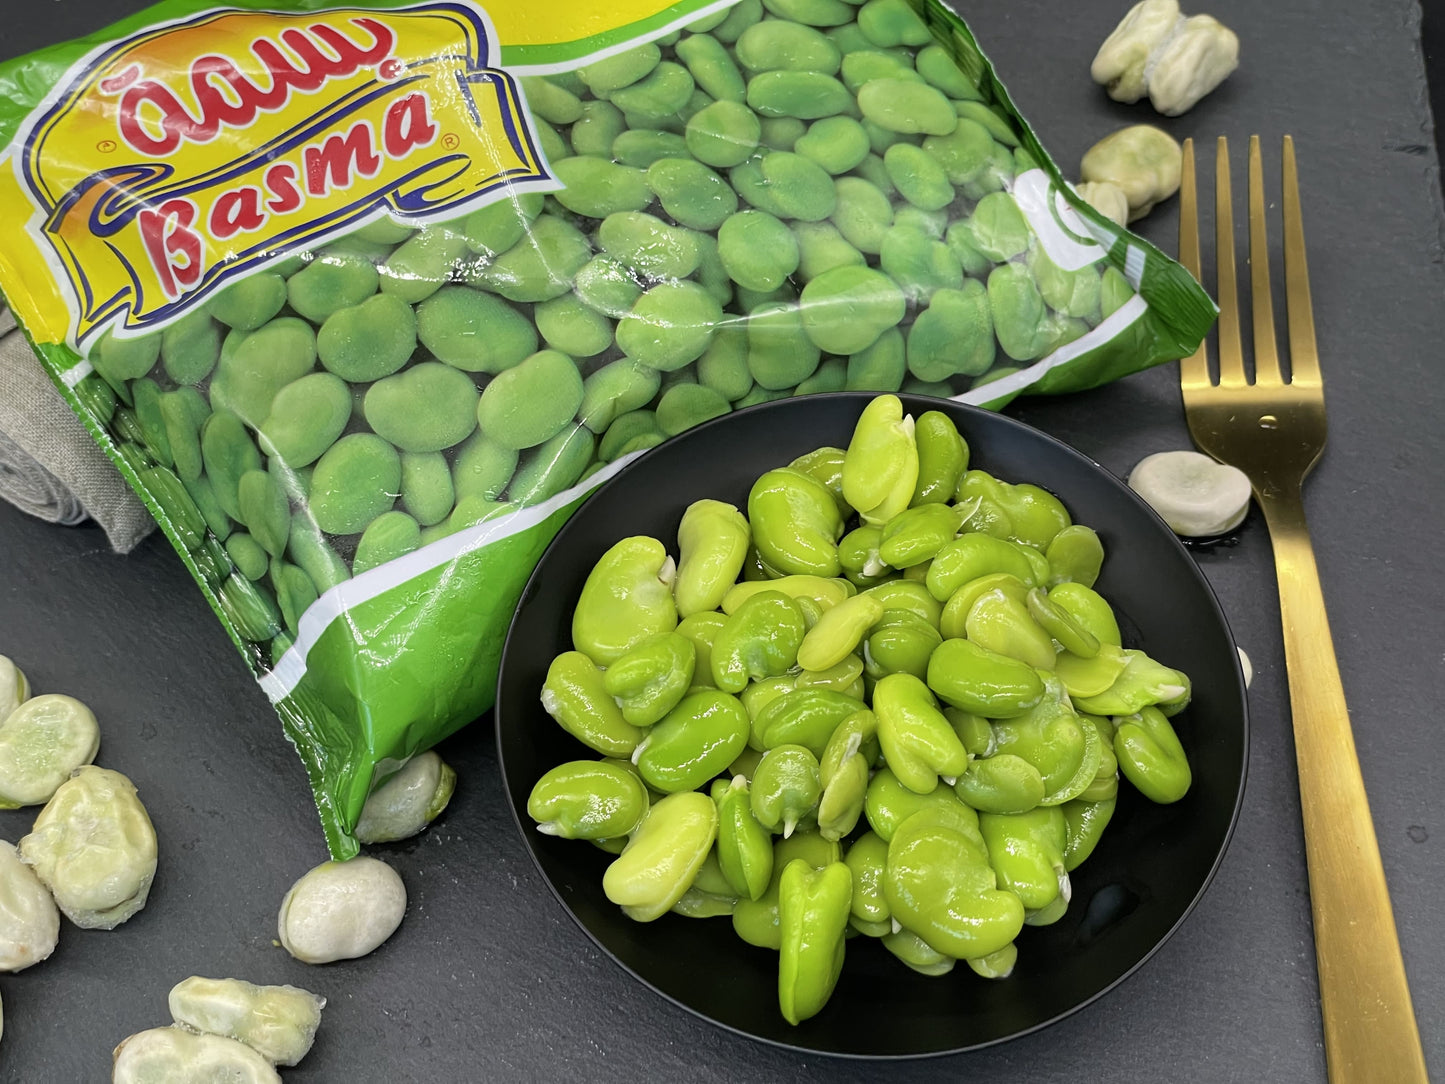 Basma Broad Beans 400G